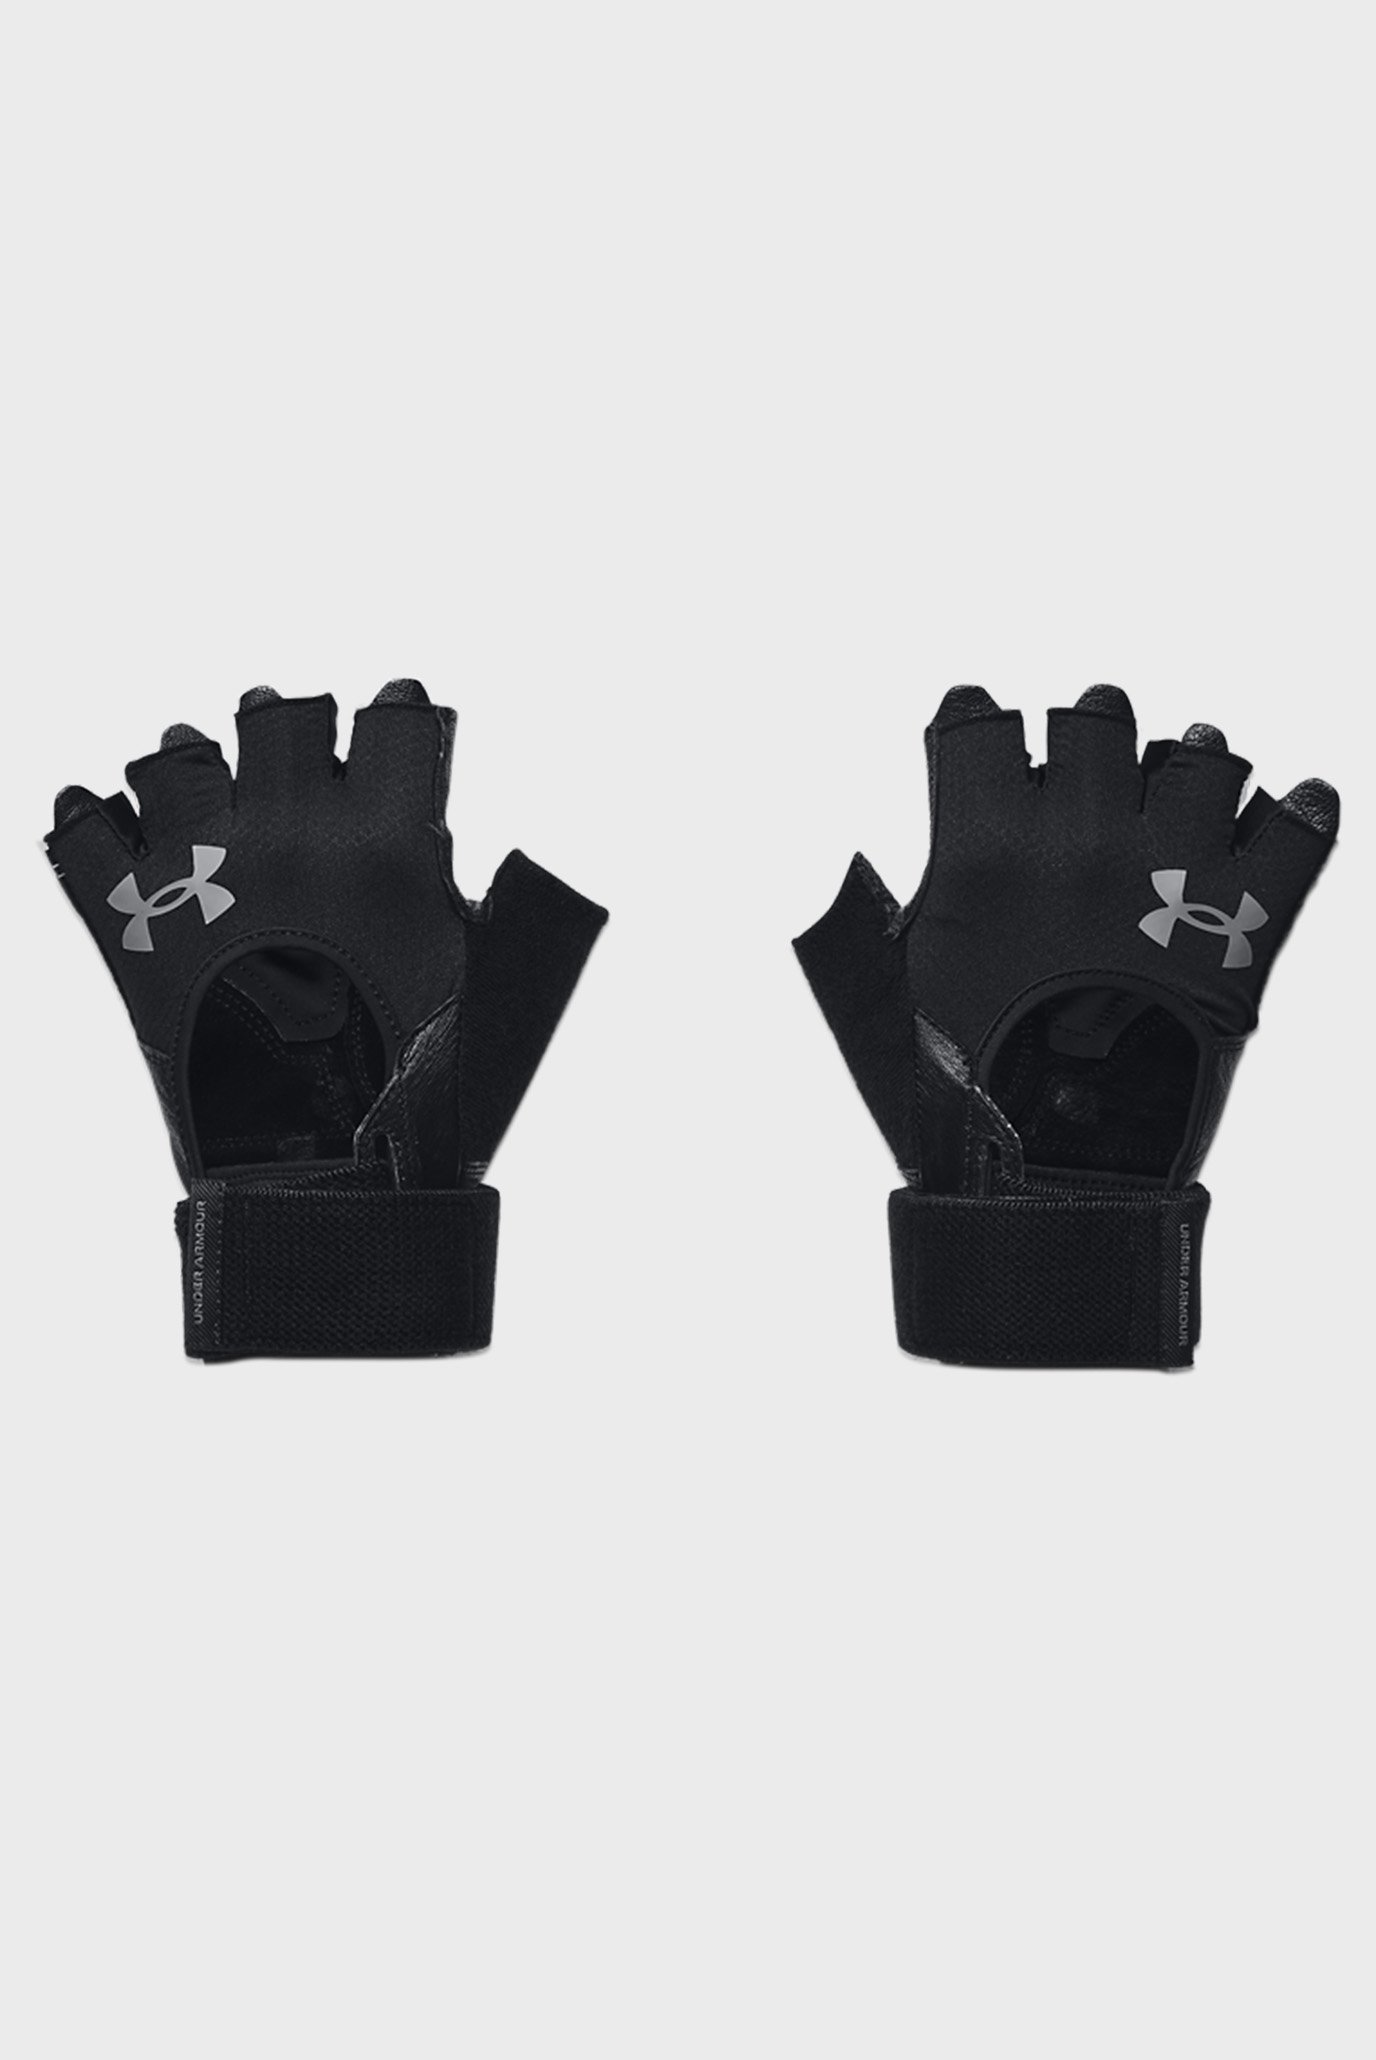 Чоловічі чорні шкіряні рукавички M's Weightlifting Gloves 1